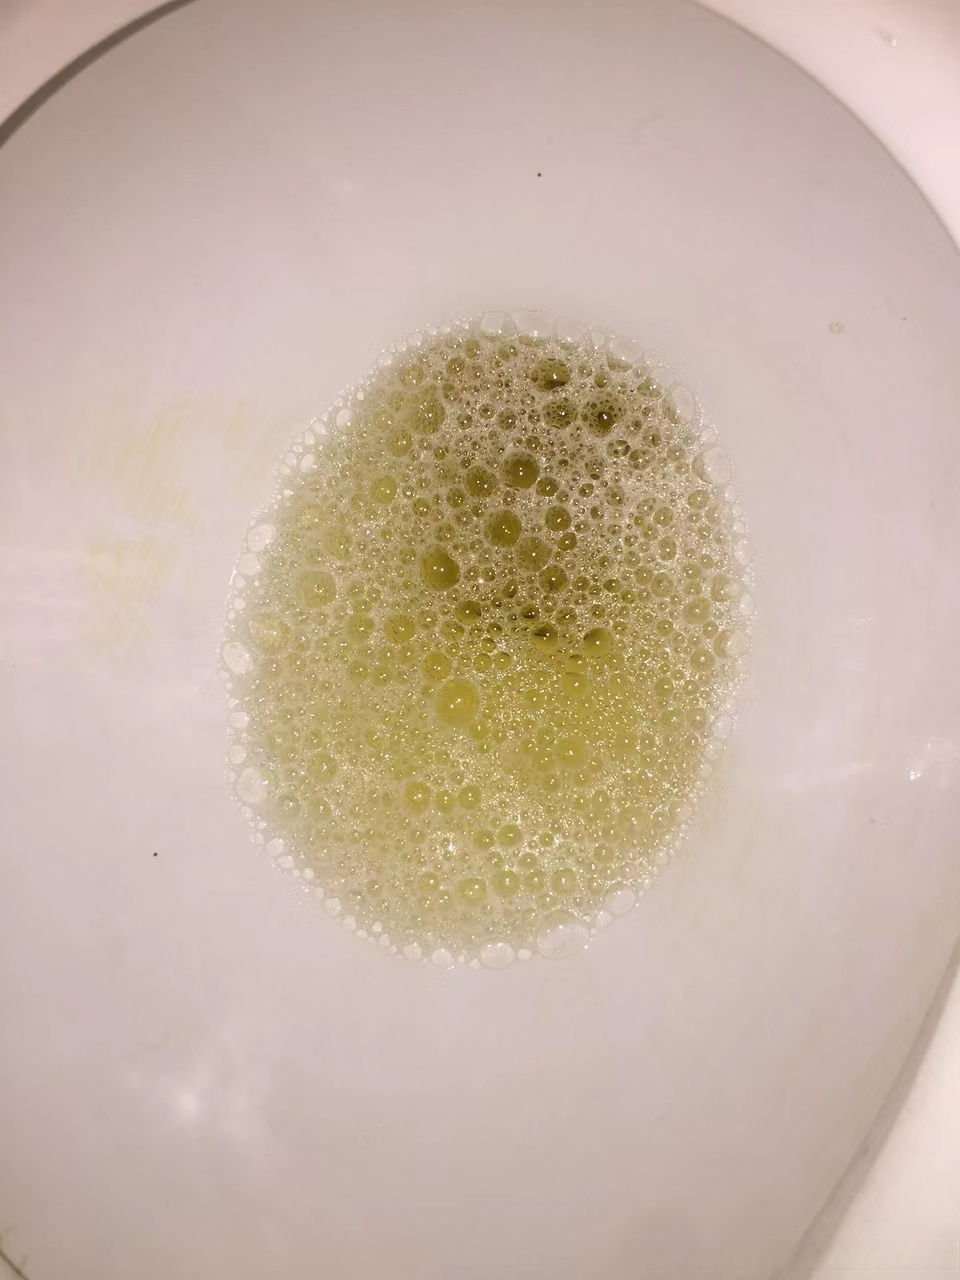 泡沫尿的图片 正常图片